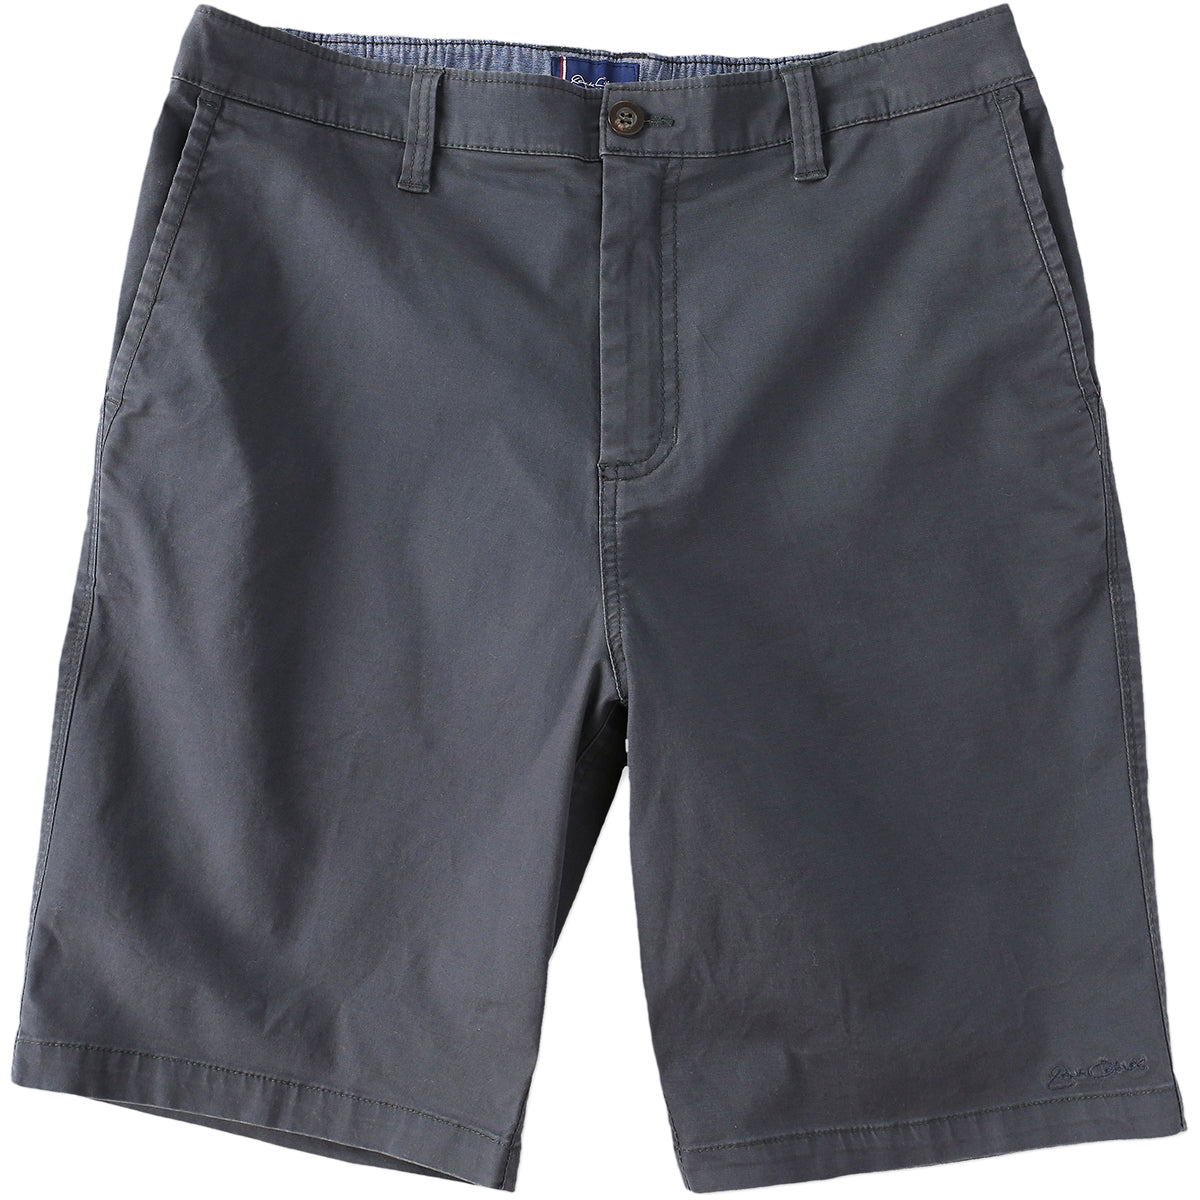 O'Neill Jack O'Neill Flagship Men's Chino Shorts - Dark Charcoal